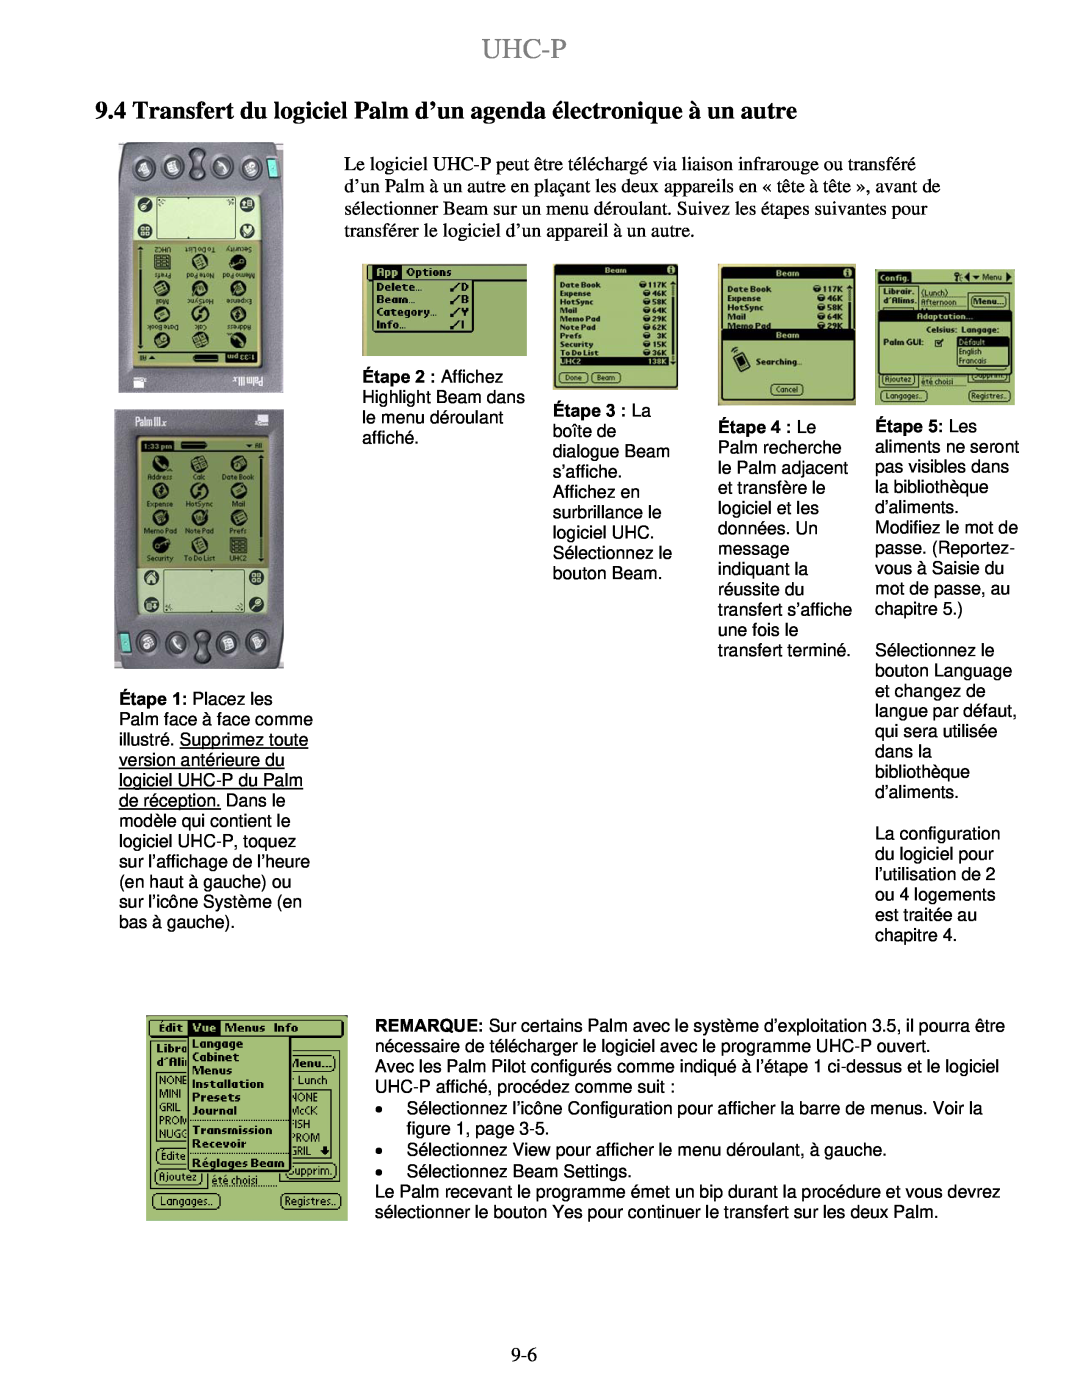 Frymaster UHC-P 2 Transfert du logiciel Palm d’un agenda électronique à un autre, Uhc-P, Étape 2 Affichez, Étape 3 La 